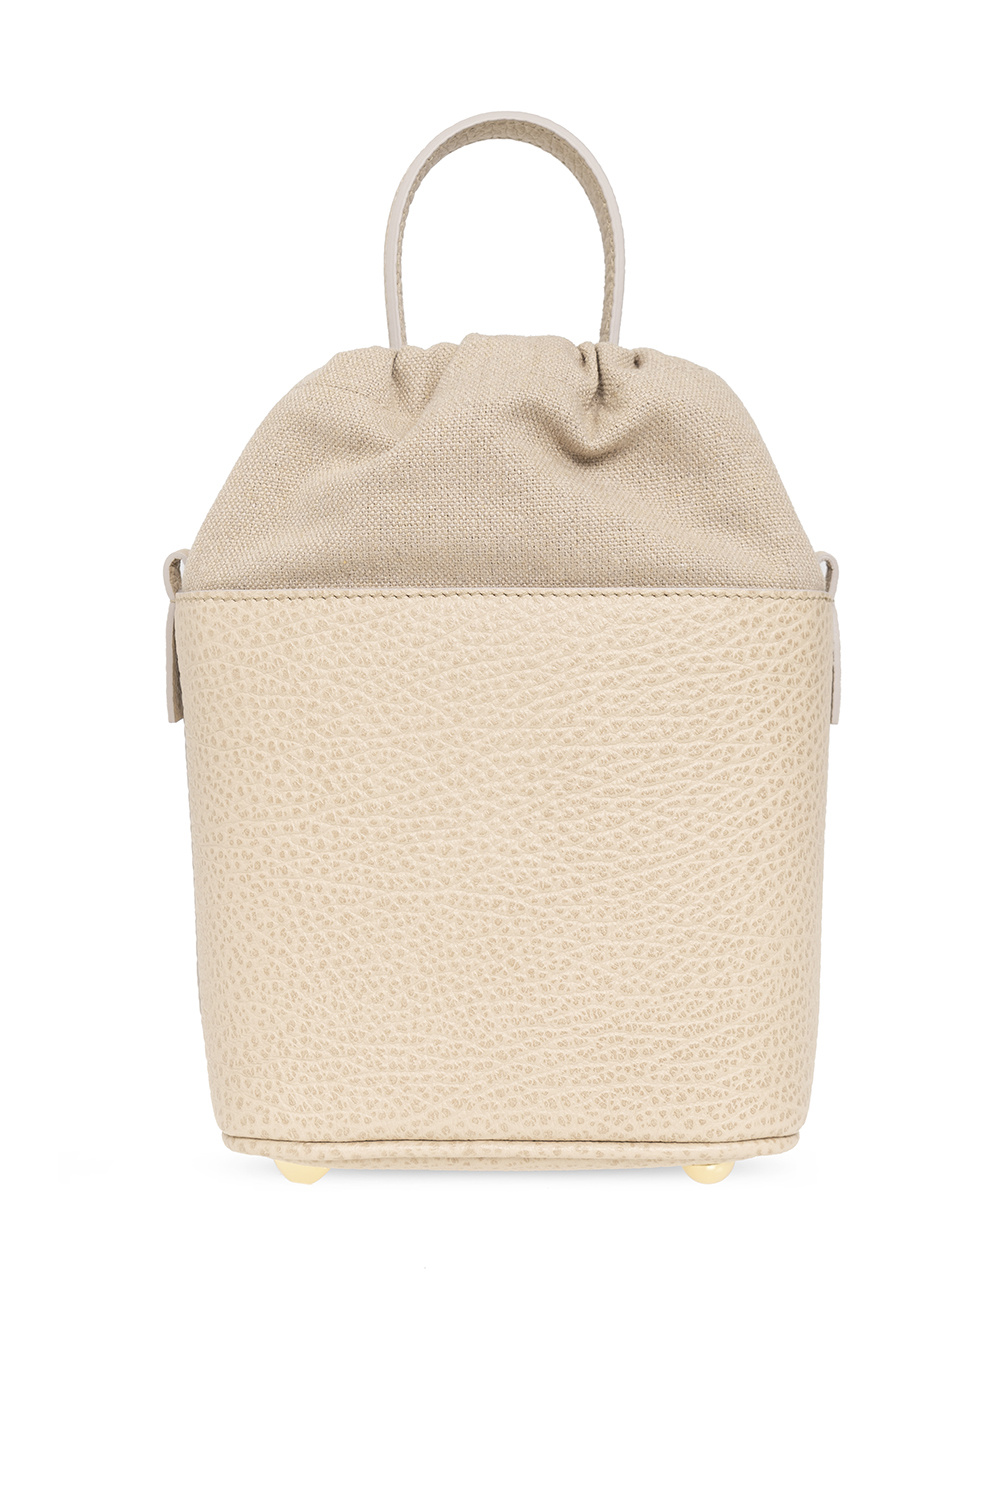 Maison Margiela ‘Textured’ shoulder bag